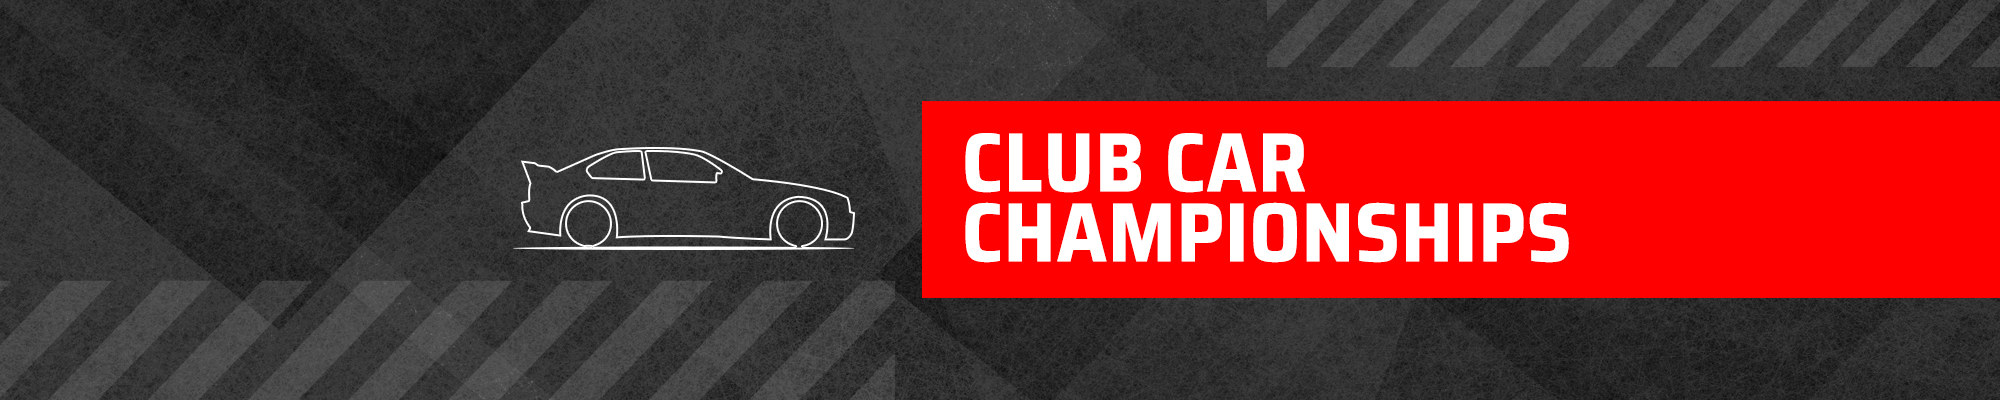 Scottish Motor Racing Club Car Championships